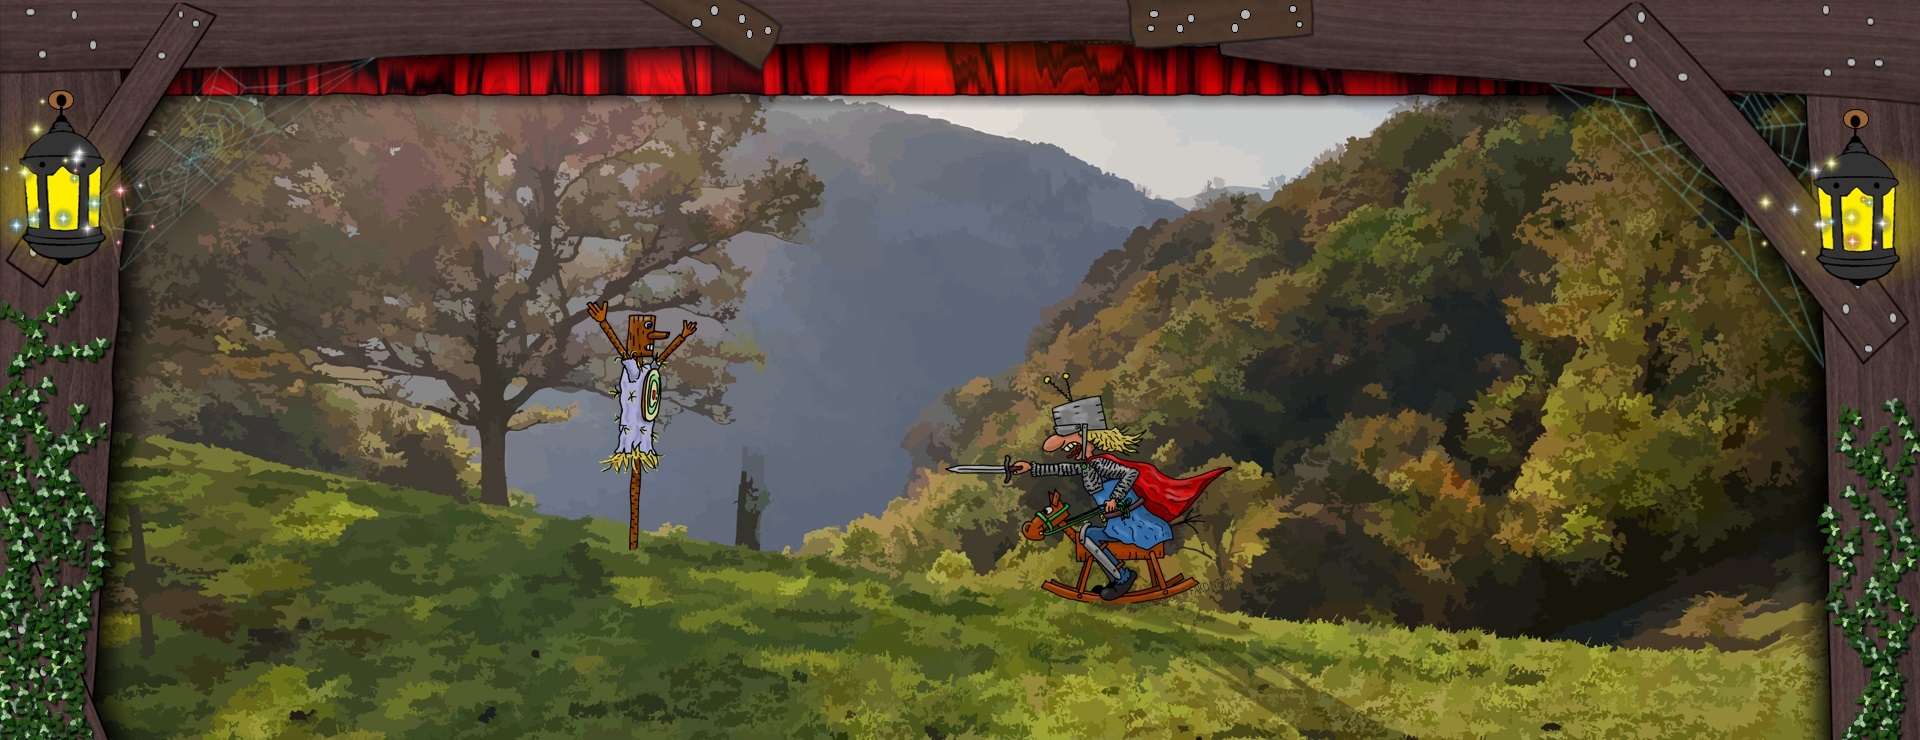 Bannerbild - Ein Ritter auf dem Schaukelpferd kämpft gegen Strohpuppe